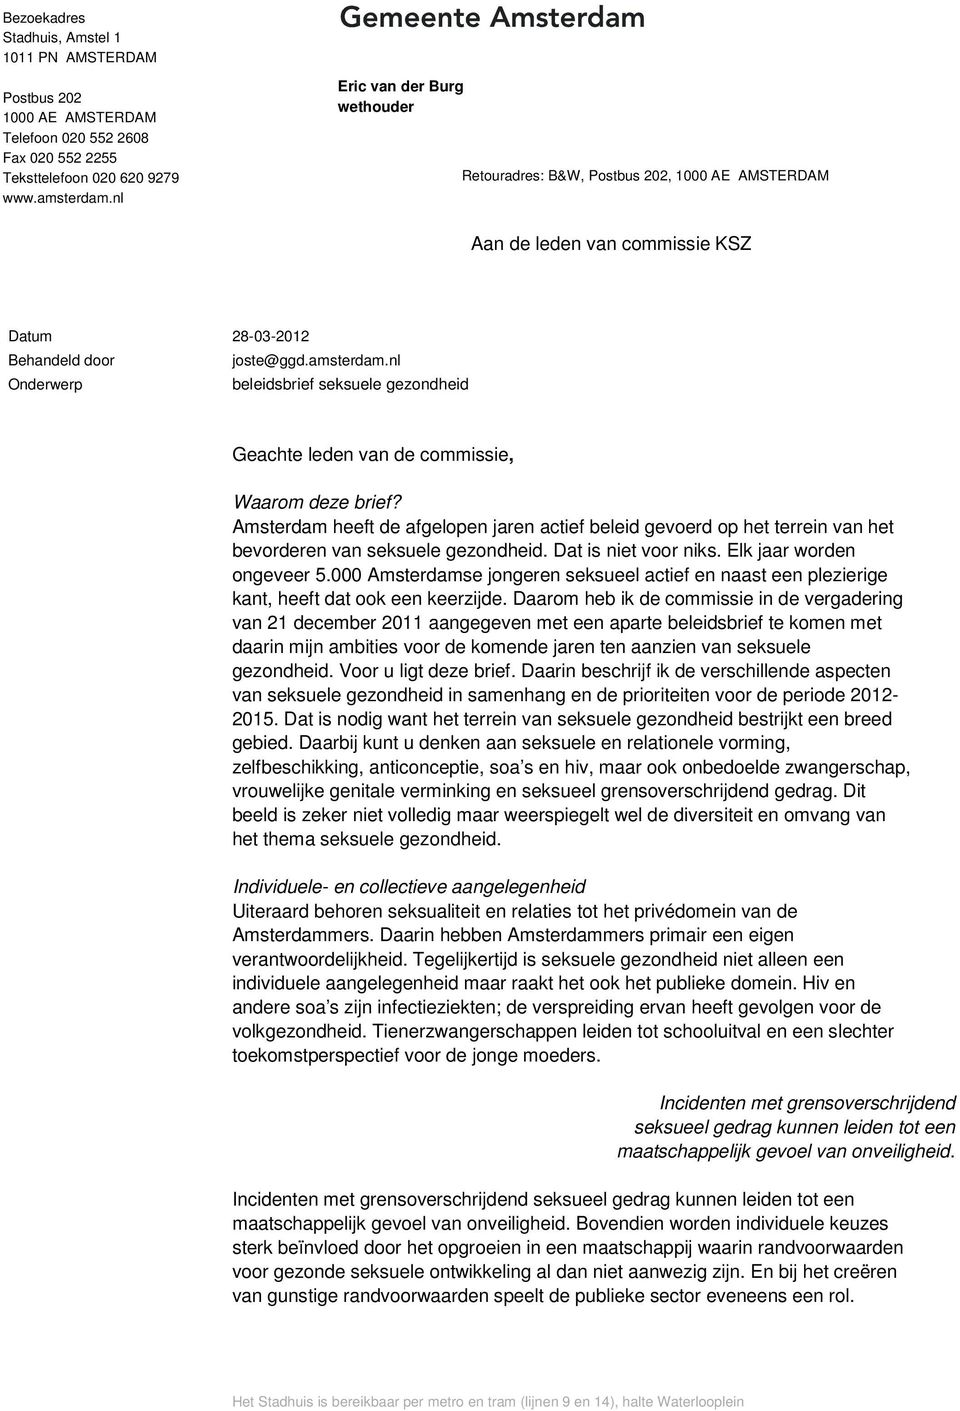 nl Onderwerp beleidsbrief seksuele gezondheid Geachte leden van de commissie, Waarom deze brief?